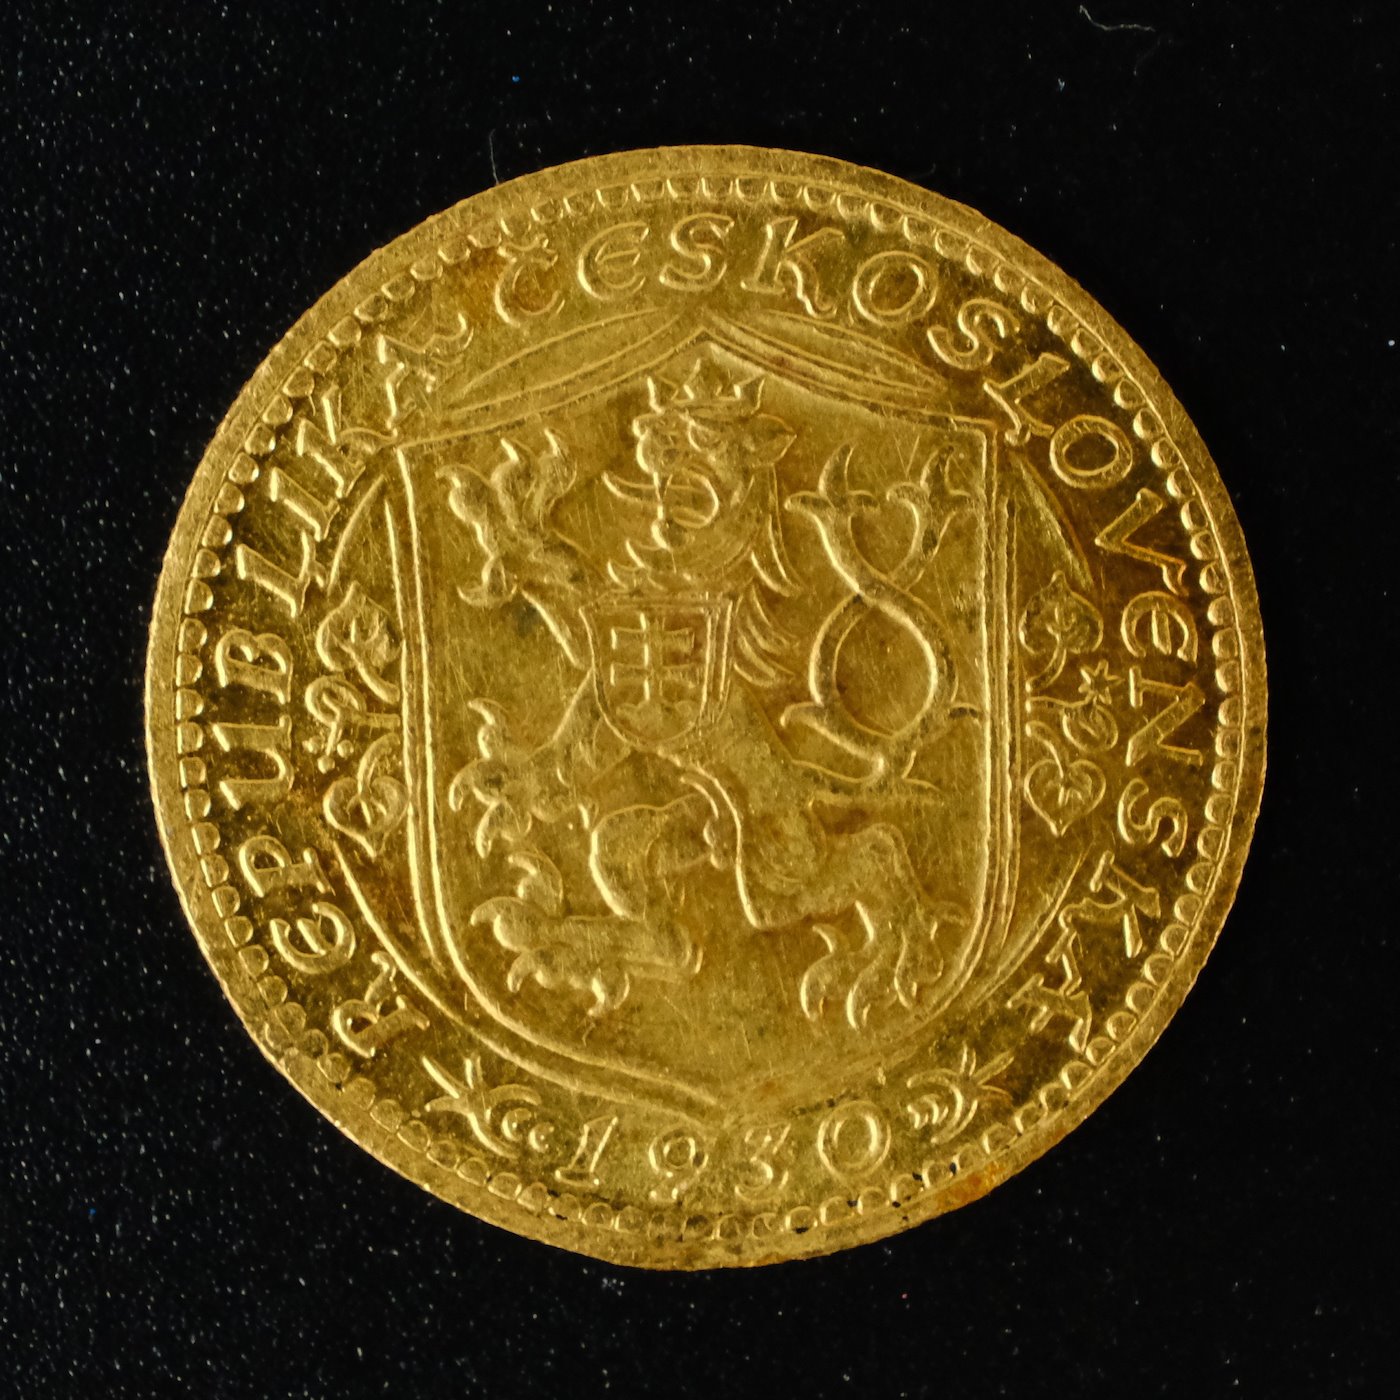 Mince - Československá republika Svatováclavský dukát 1930 RR! Zlato 986/1000, hrubá hmotnost mince 3,49g